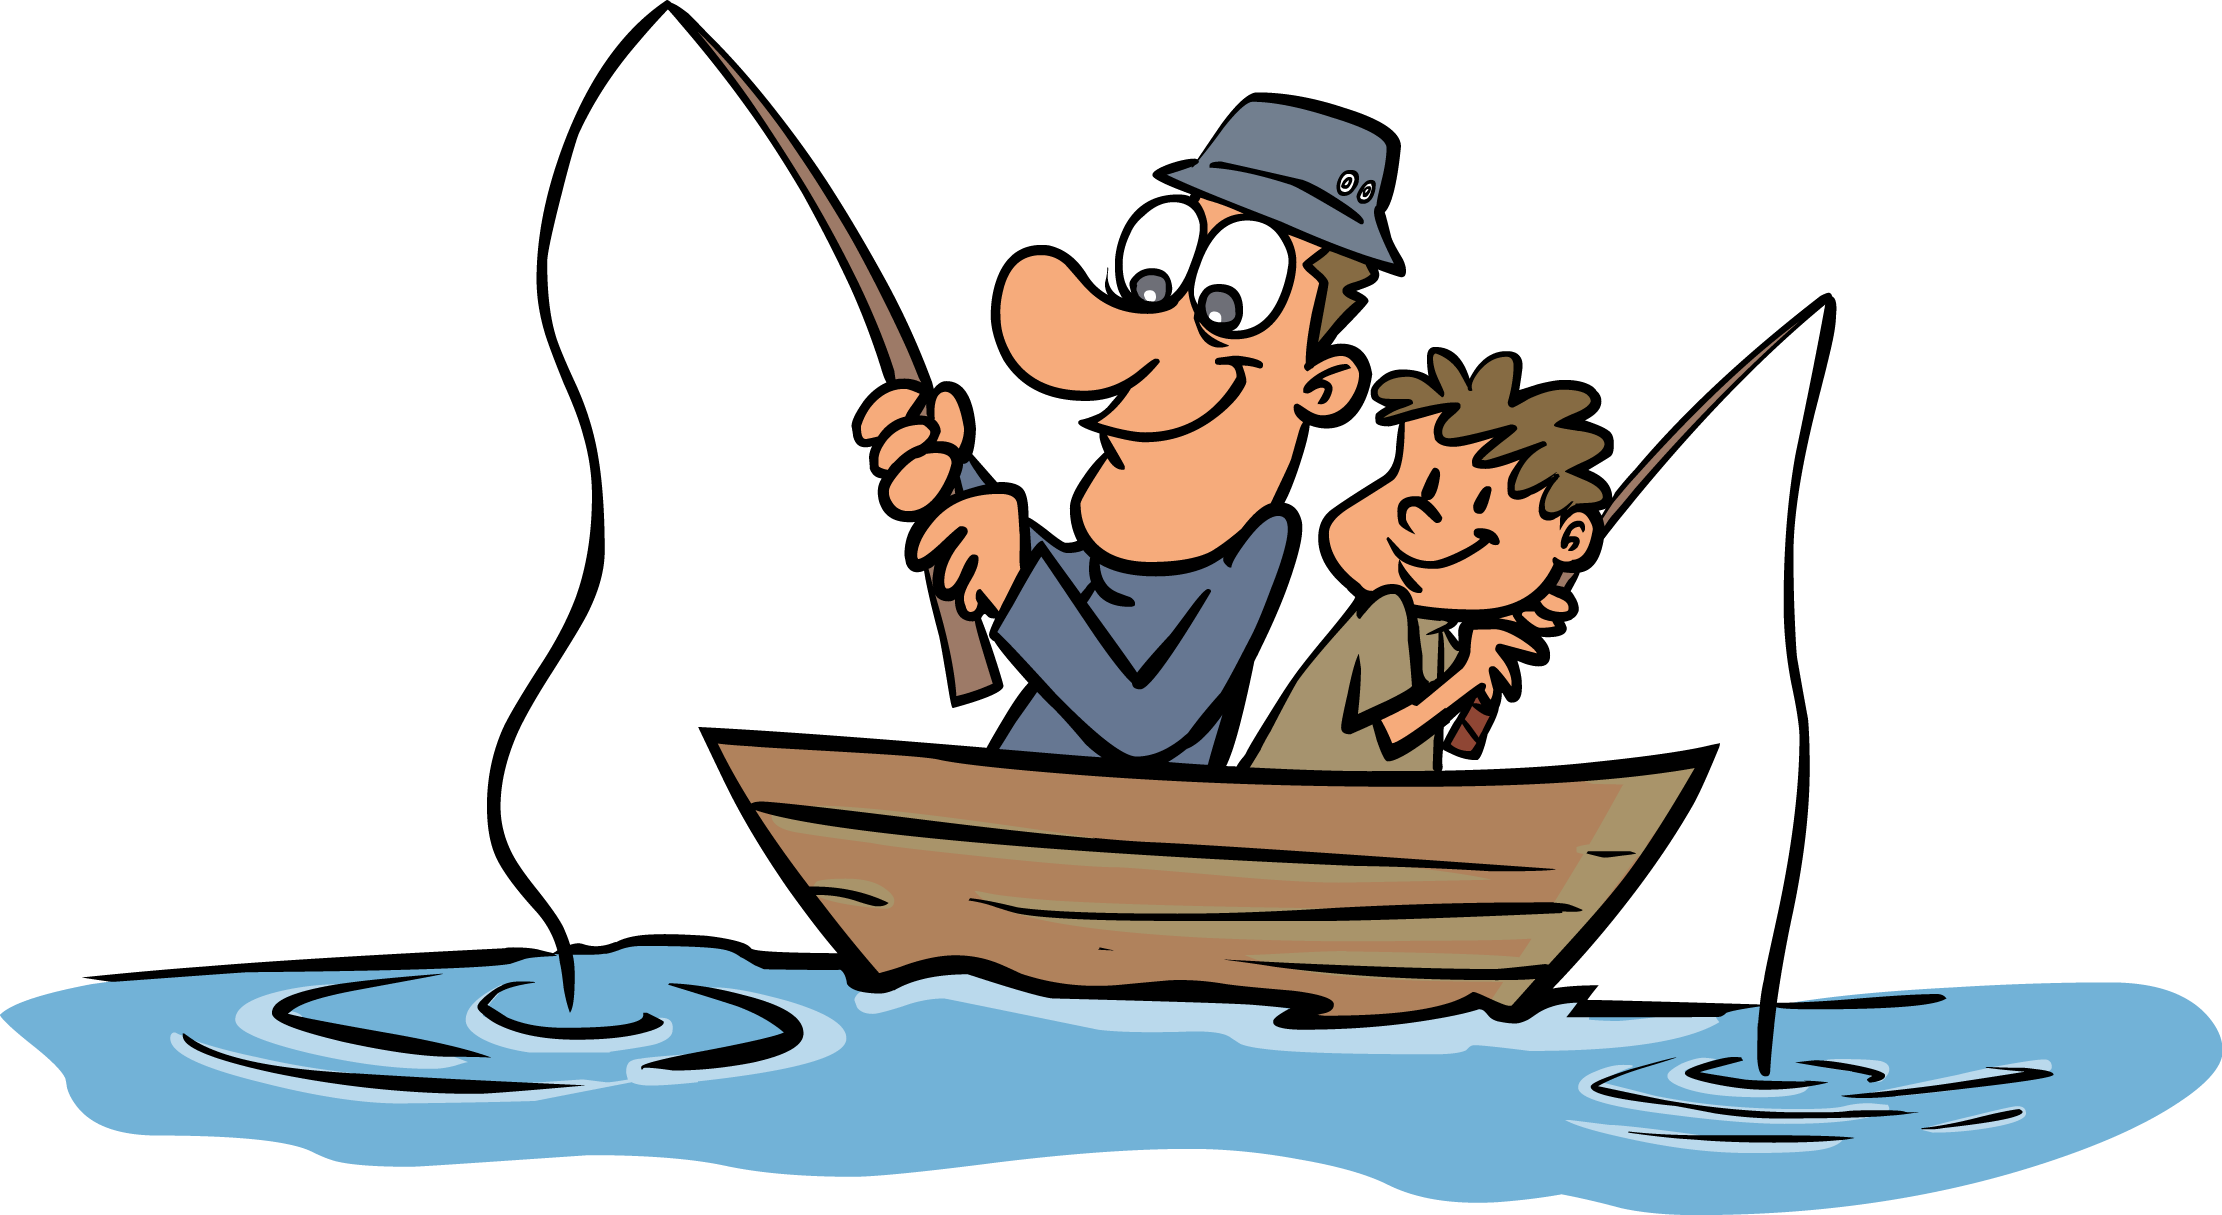 Free Cartoon Fishing, Download Free Cartoon Fishing png images, Free